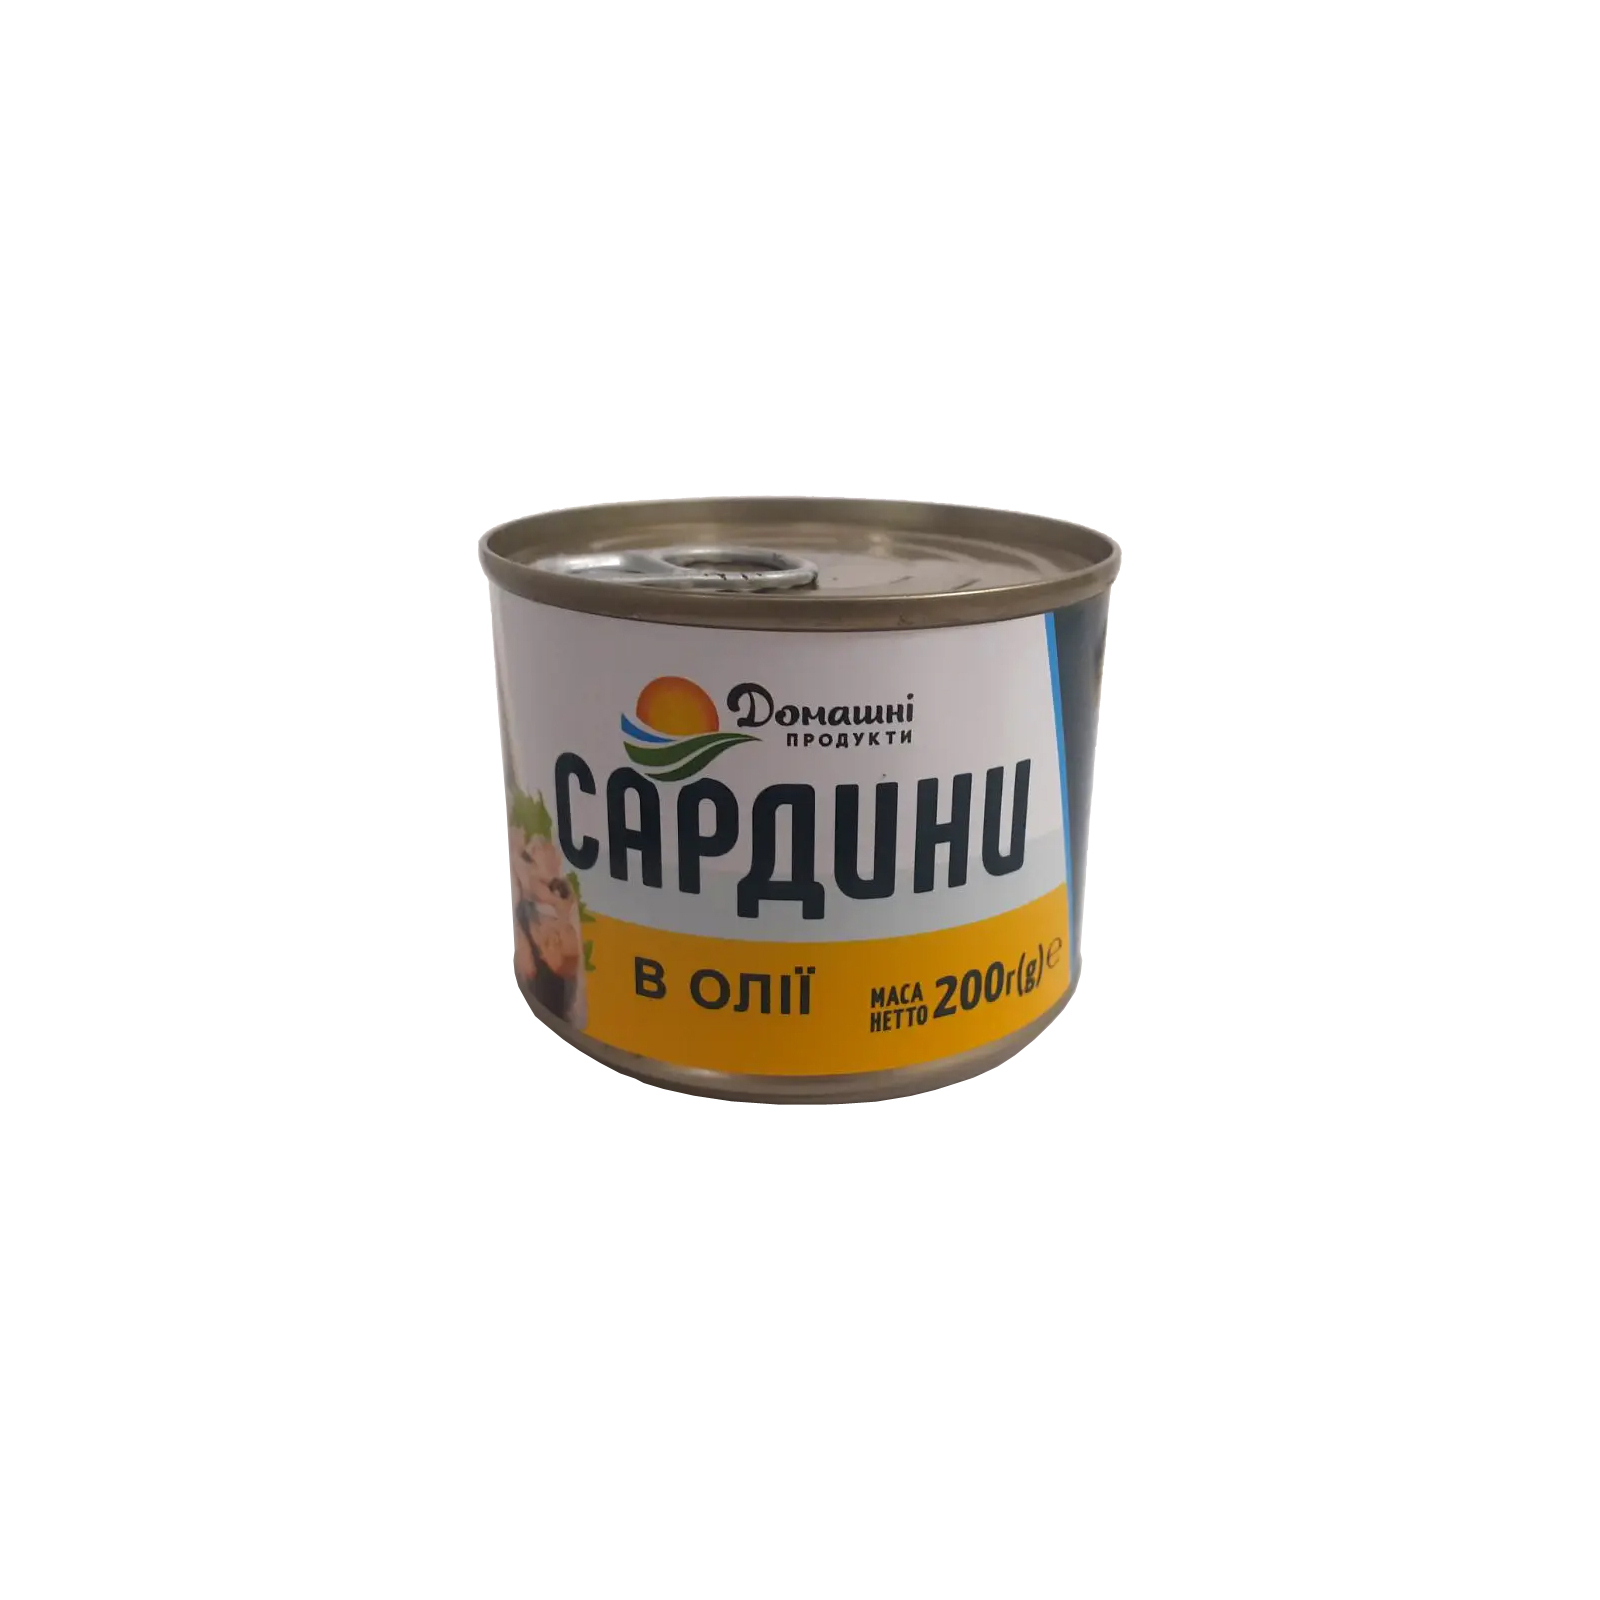 Рыбные консервы Домашні продукти Сардина в масле 200 г (4820186123067)